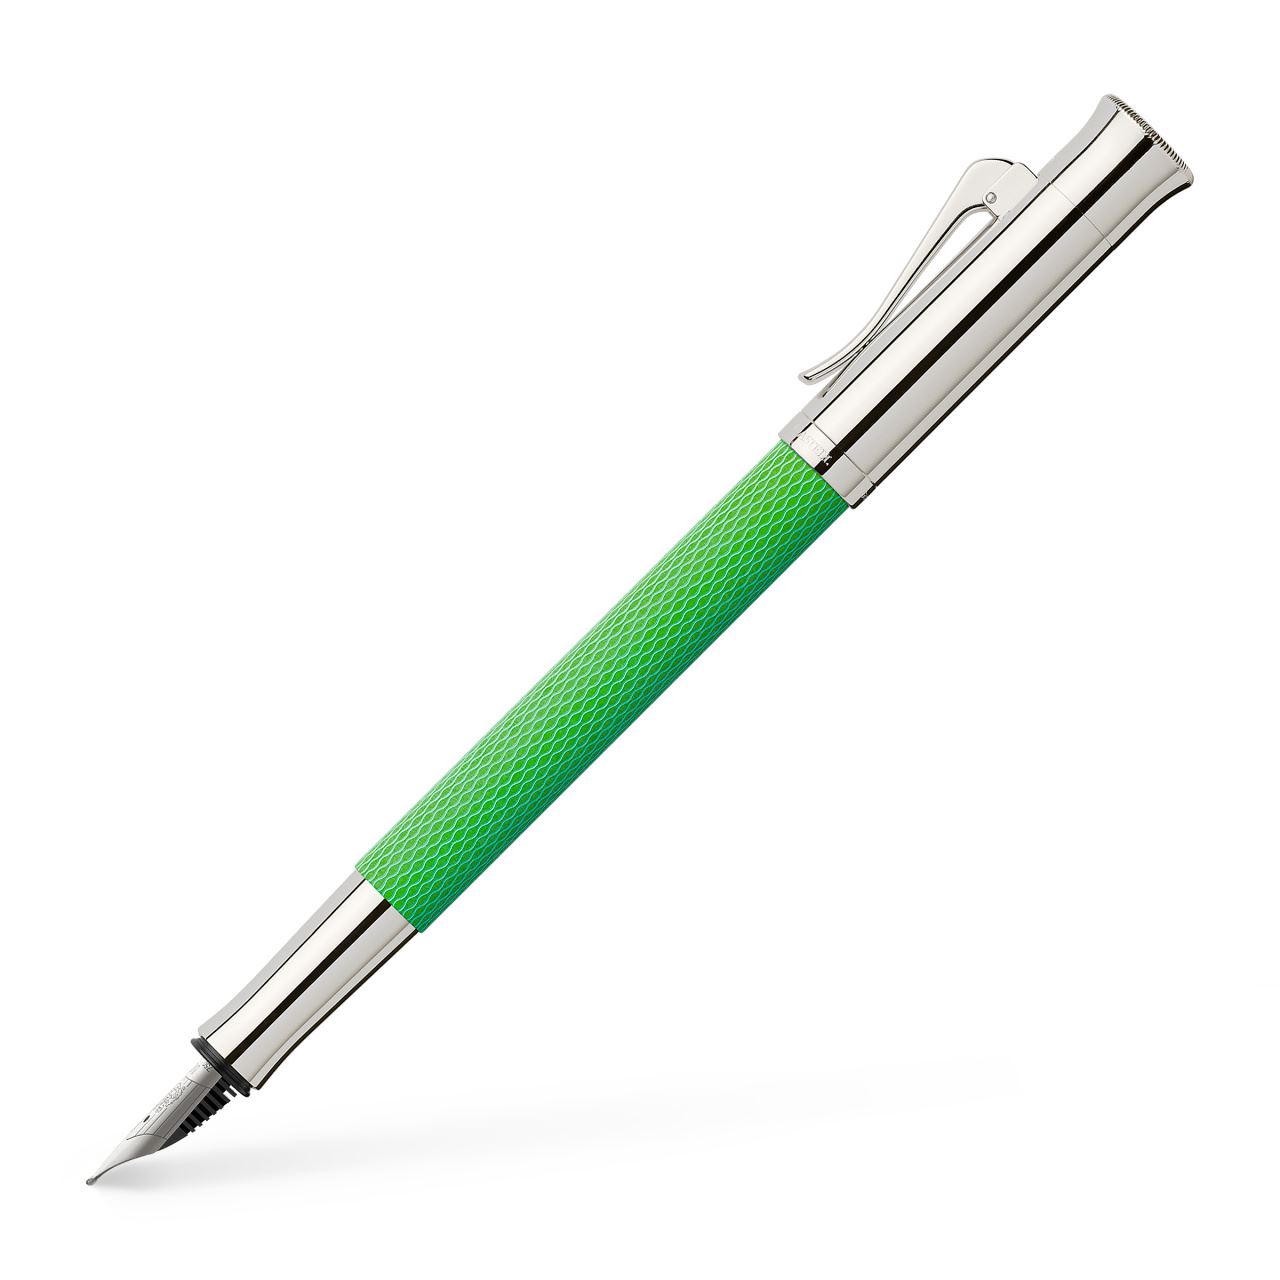 Graf-von-Faber-Castell - Fountain pen Guilloche Viper Green M